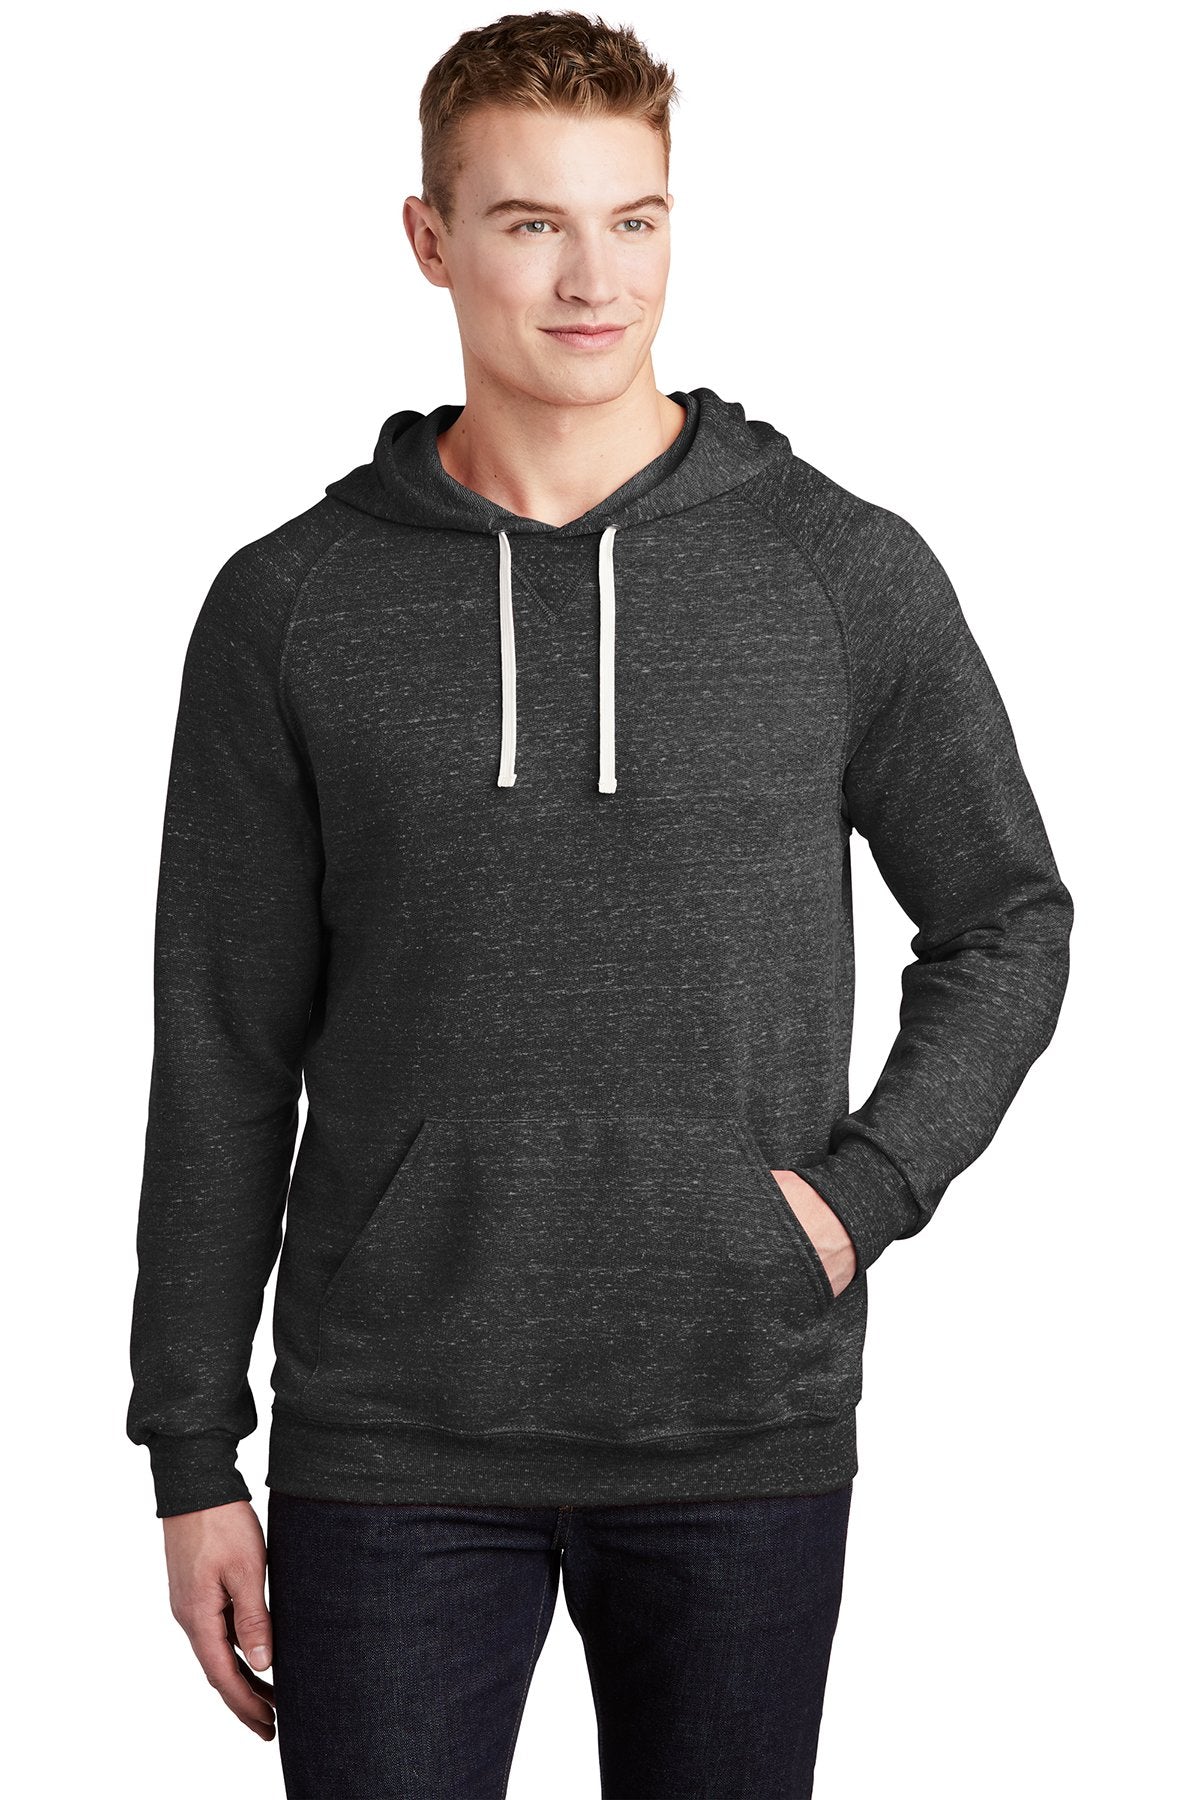 Jerzees Black Ink 90M custom dri fit sweatshirts